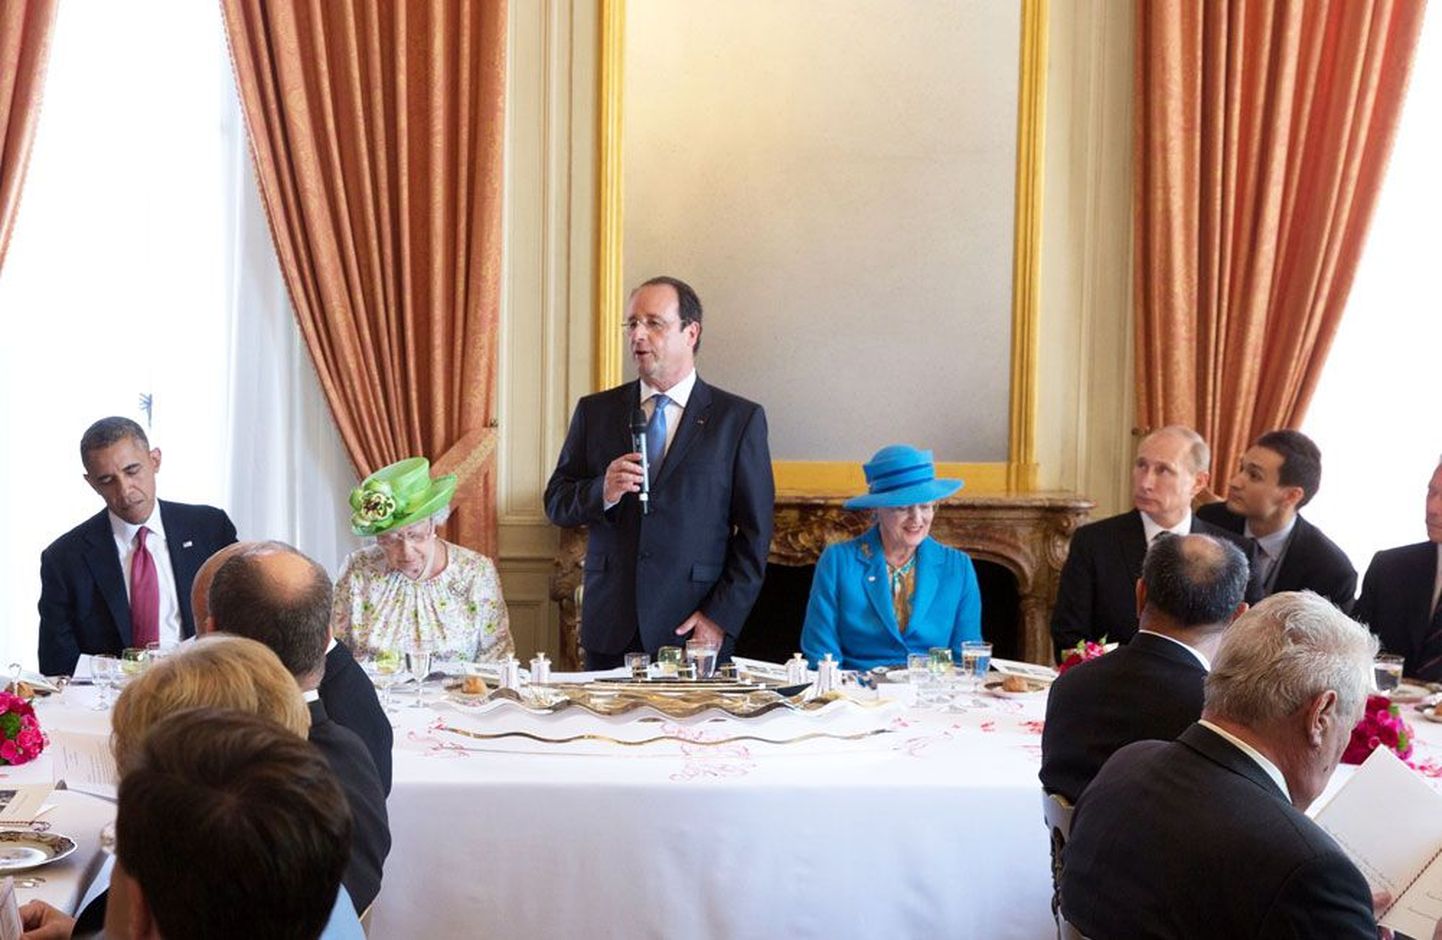 Prantsusmaa president François Hollande pidas eile lauakõne Teise maailmasõja võitjariikide peade kohtumisel Normandias. Hollande’ist vasakul USA president Barack Obama ja Suurbritannia kuninganna Elizabeth II, paremal Taani kuninganna Margrethe II ja Venemaa president Vladimir Putin.